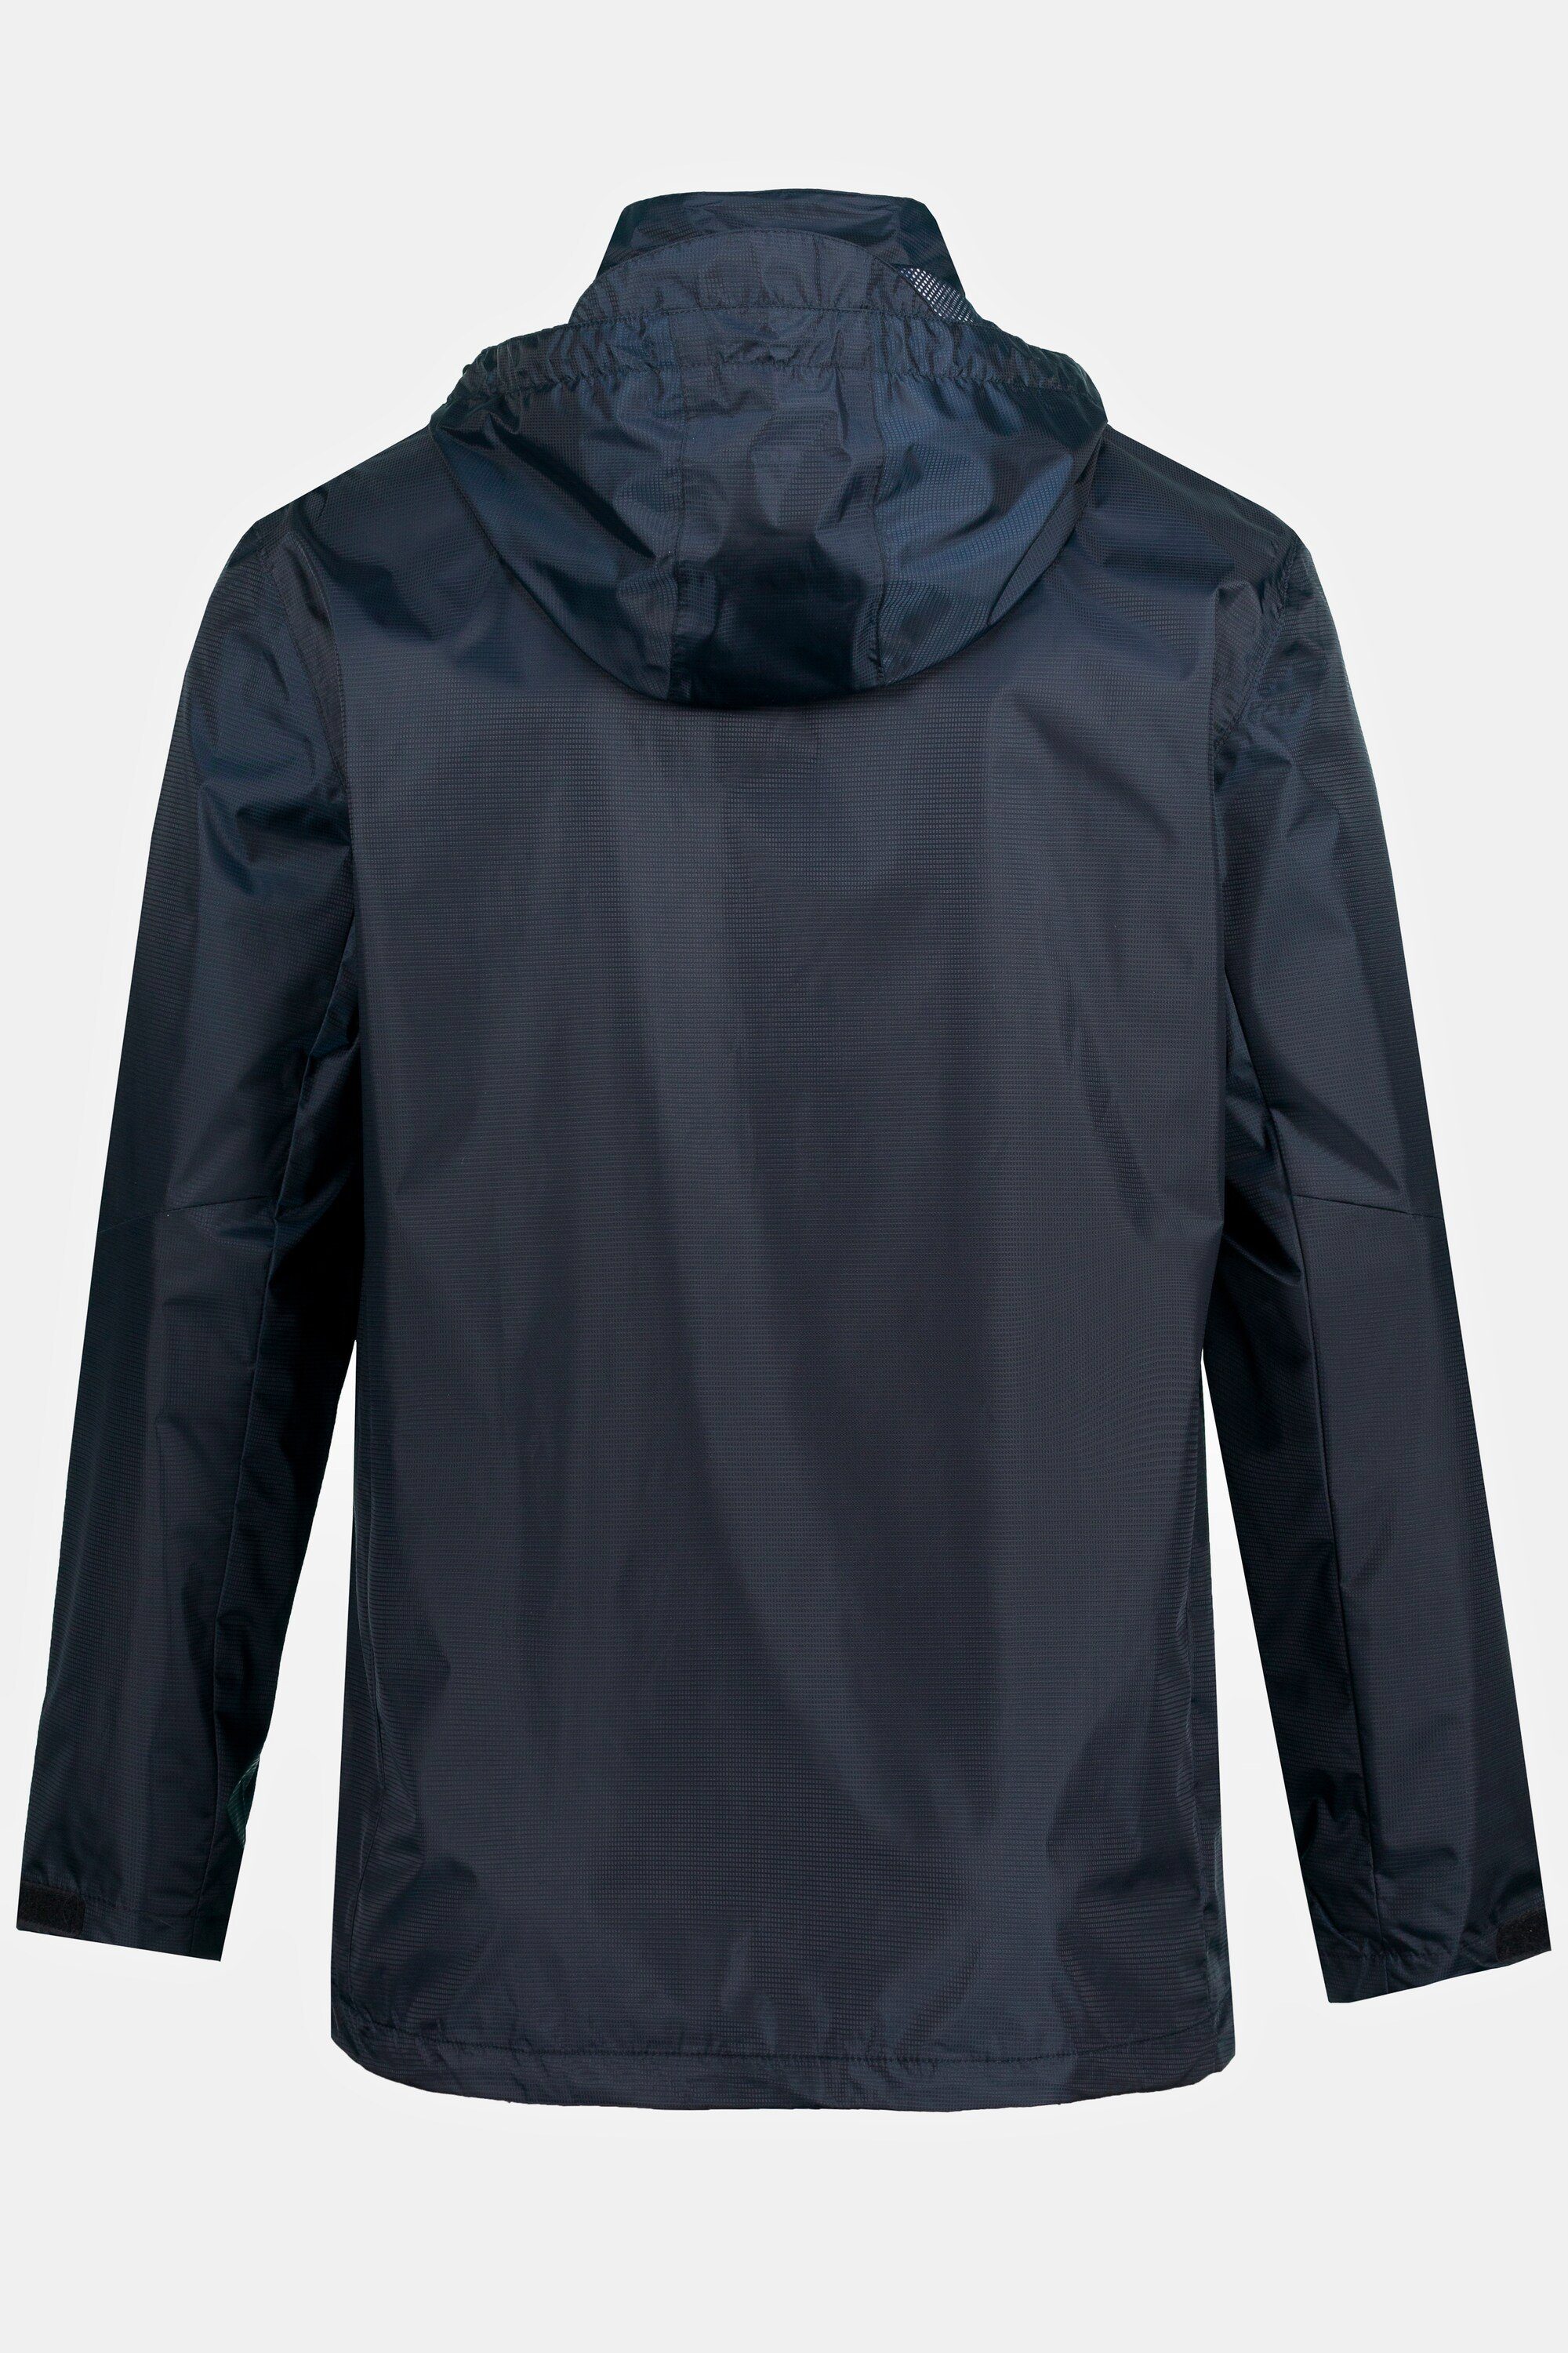 Regenjacke marine wasserdicht JP1880 Zipper Kapuze dunkel Fieldjacket